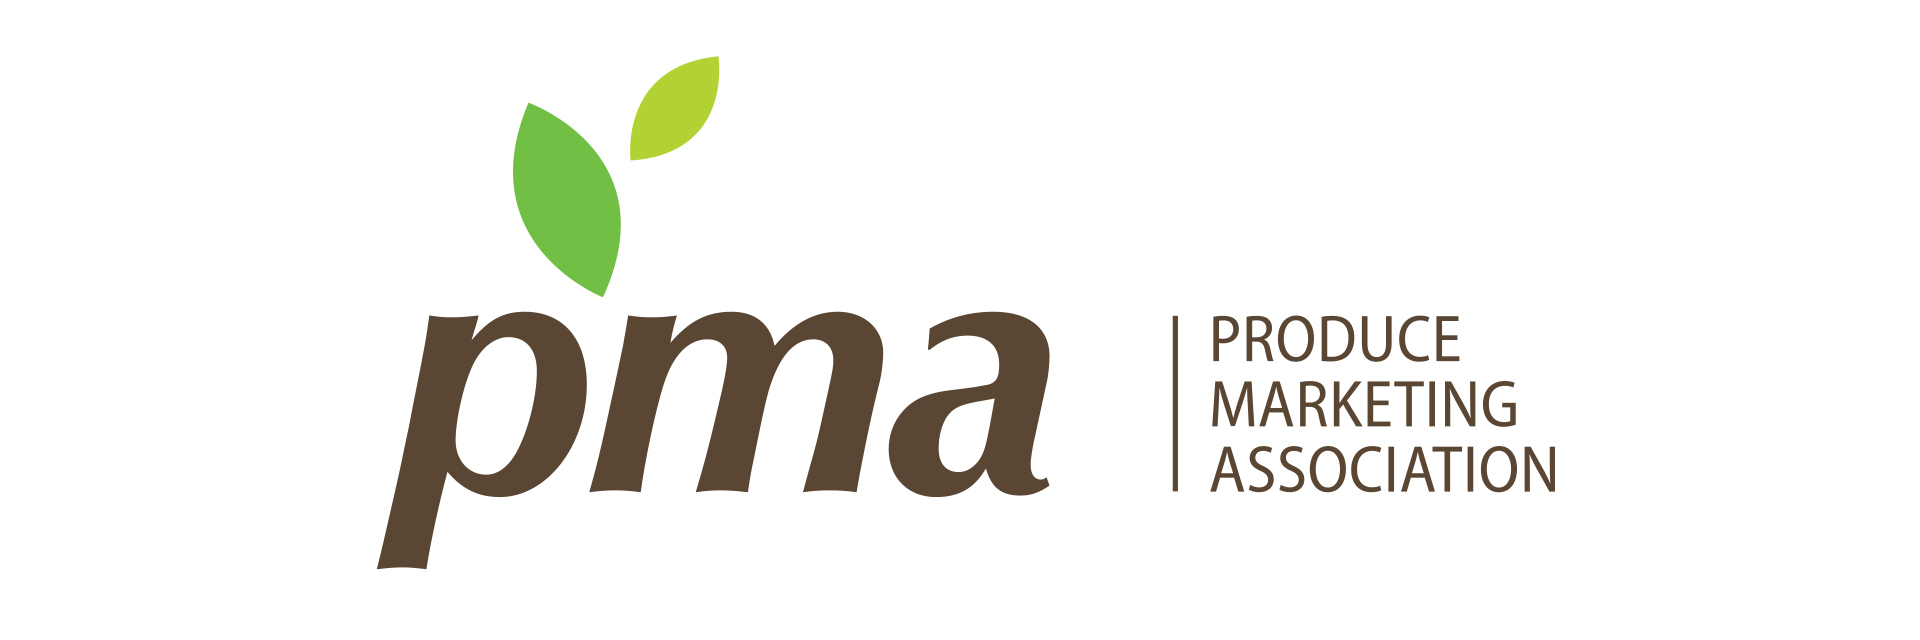 Produce Marketing Association Company Logo